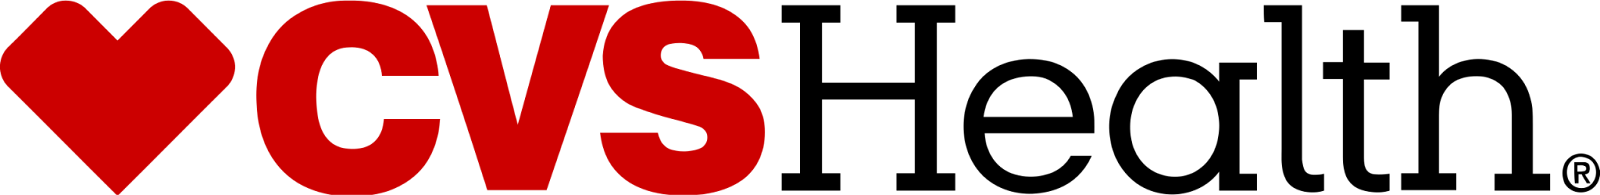 CVS лого